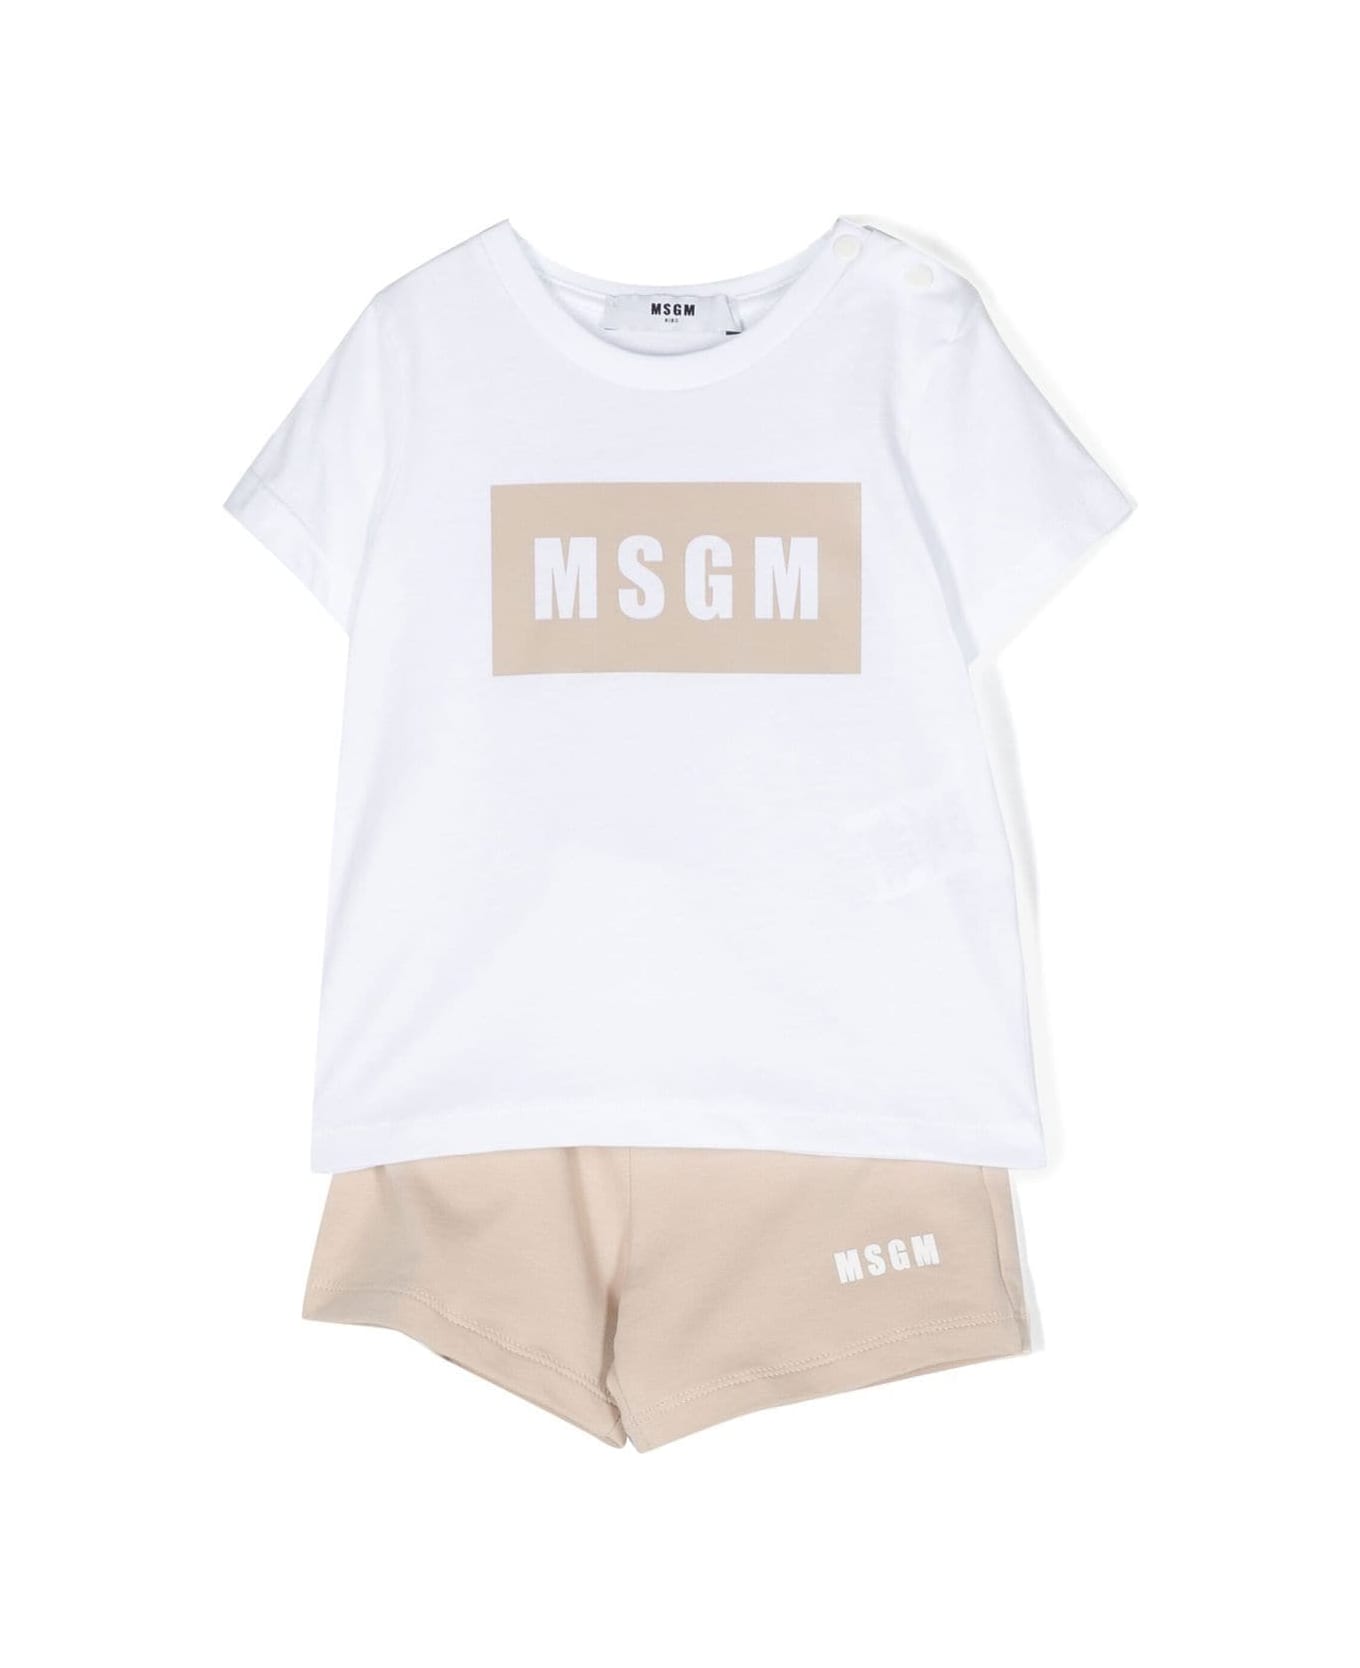 MSGM Completo Due Pezzi T-shirt E Shorts - White